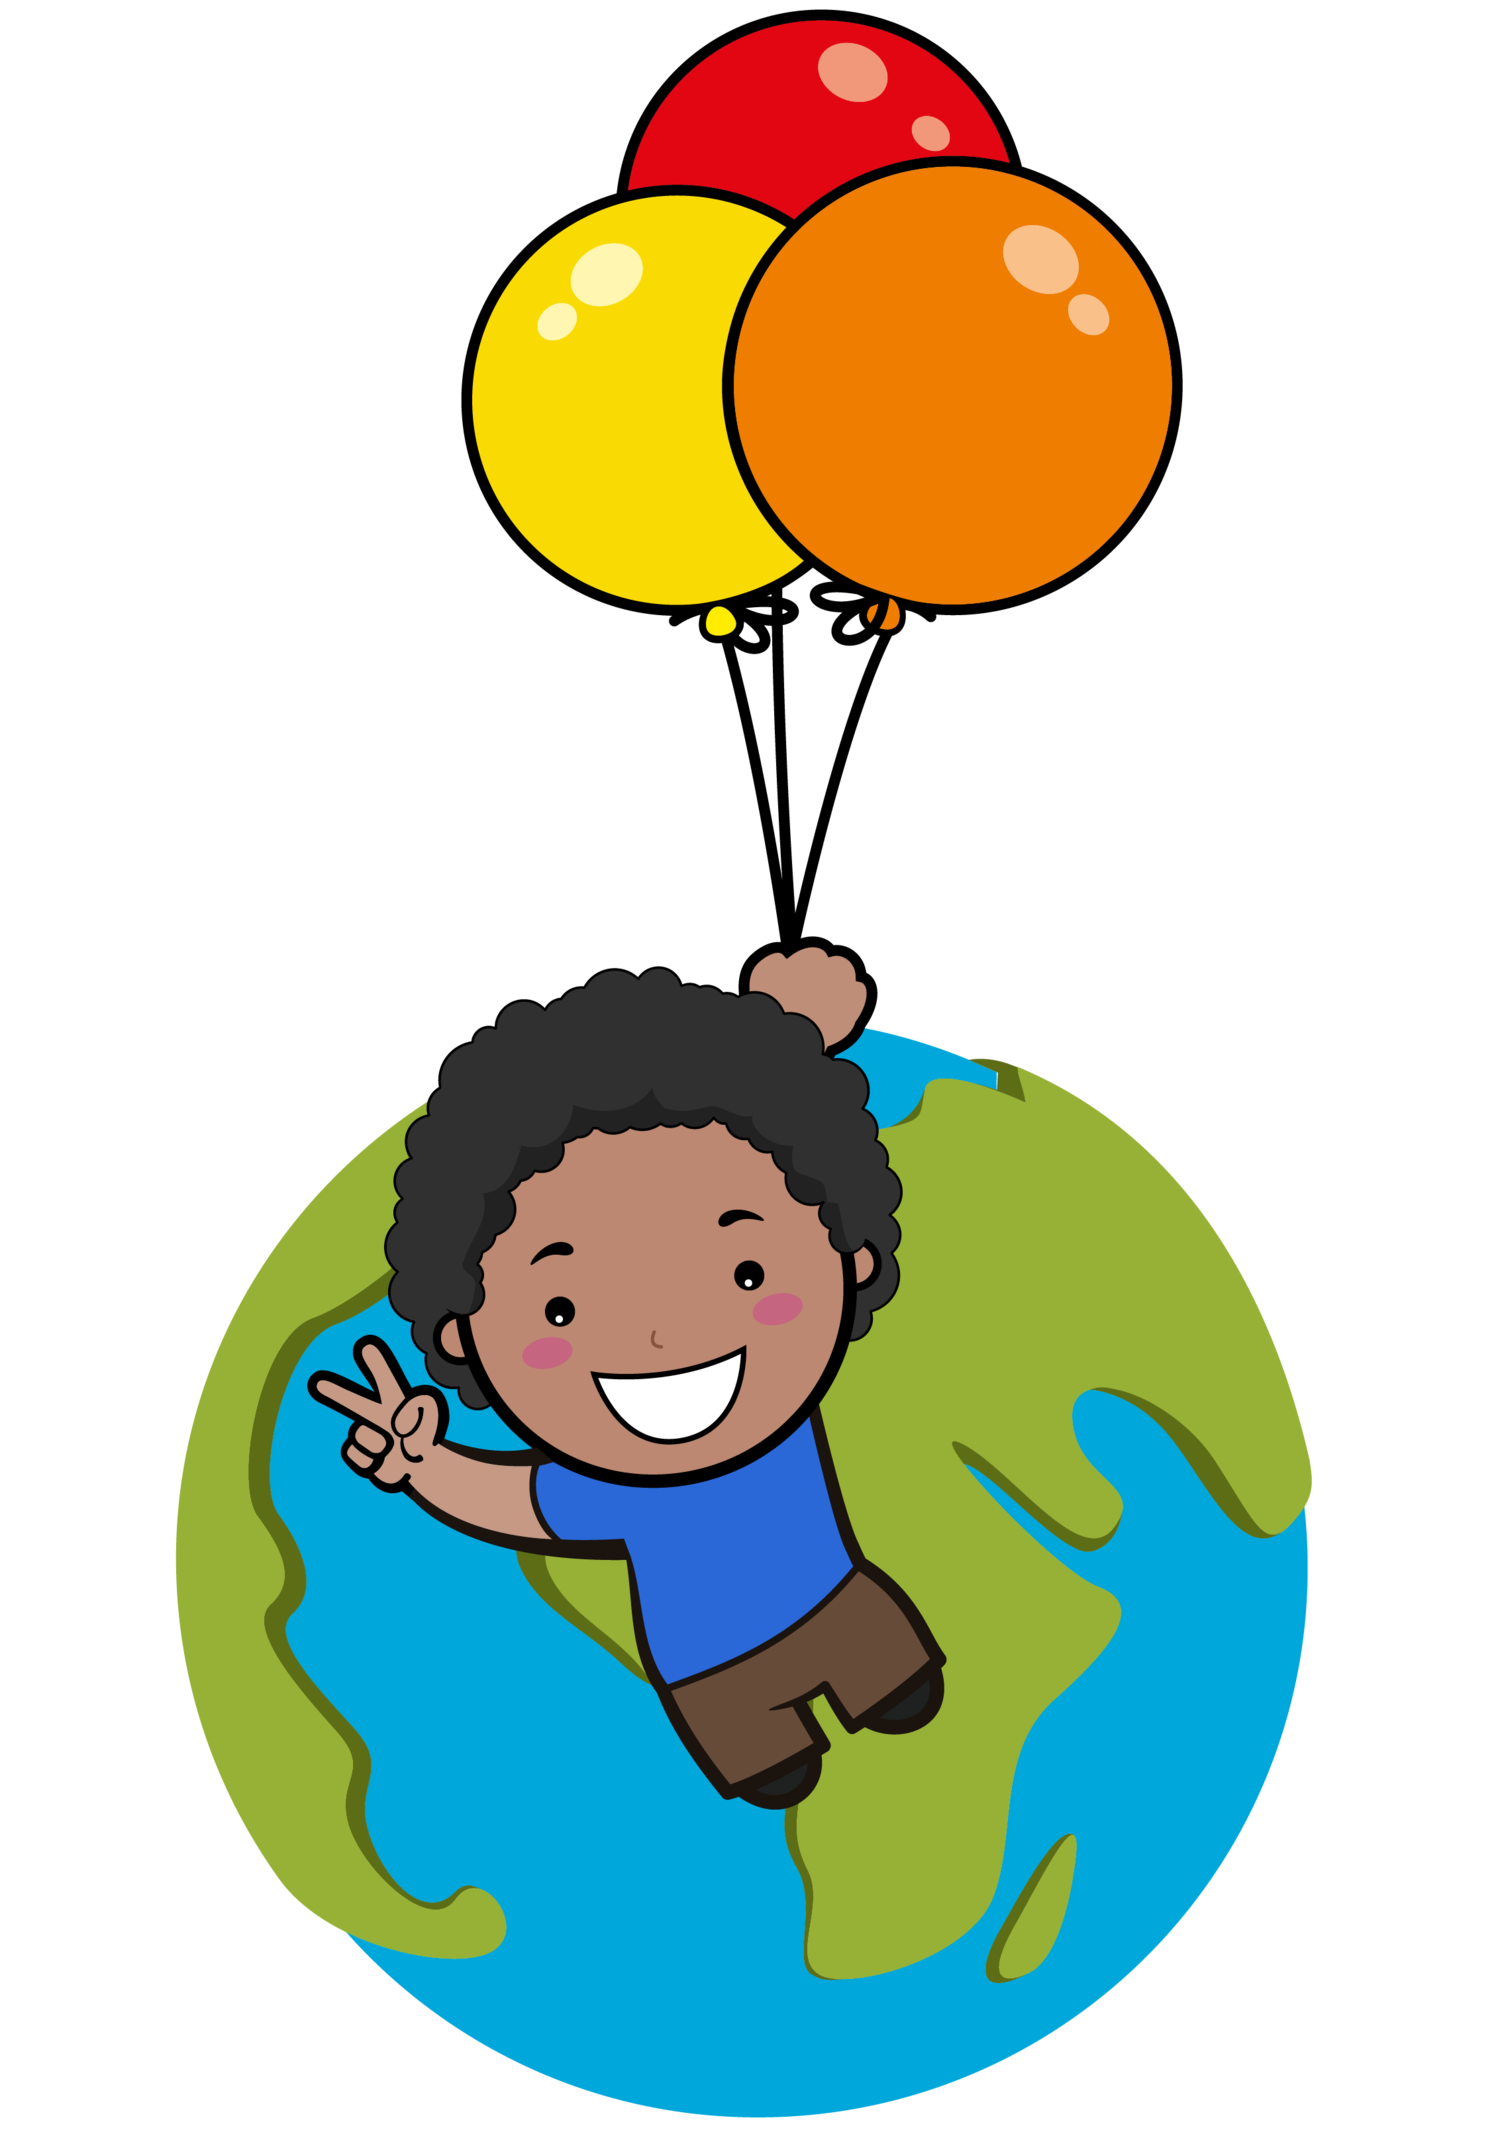 Chantal Paydar Foundation